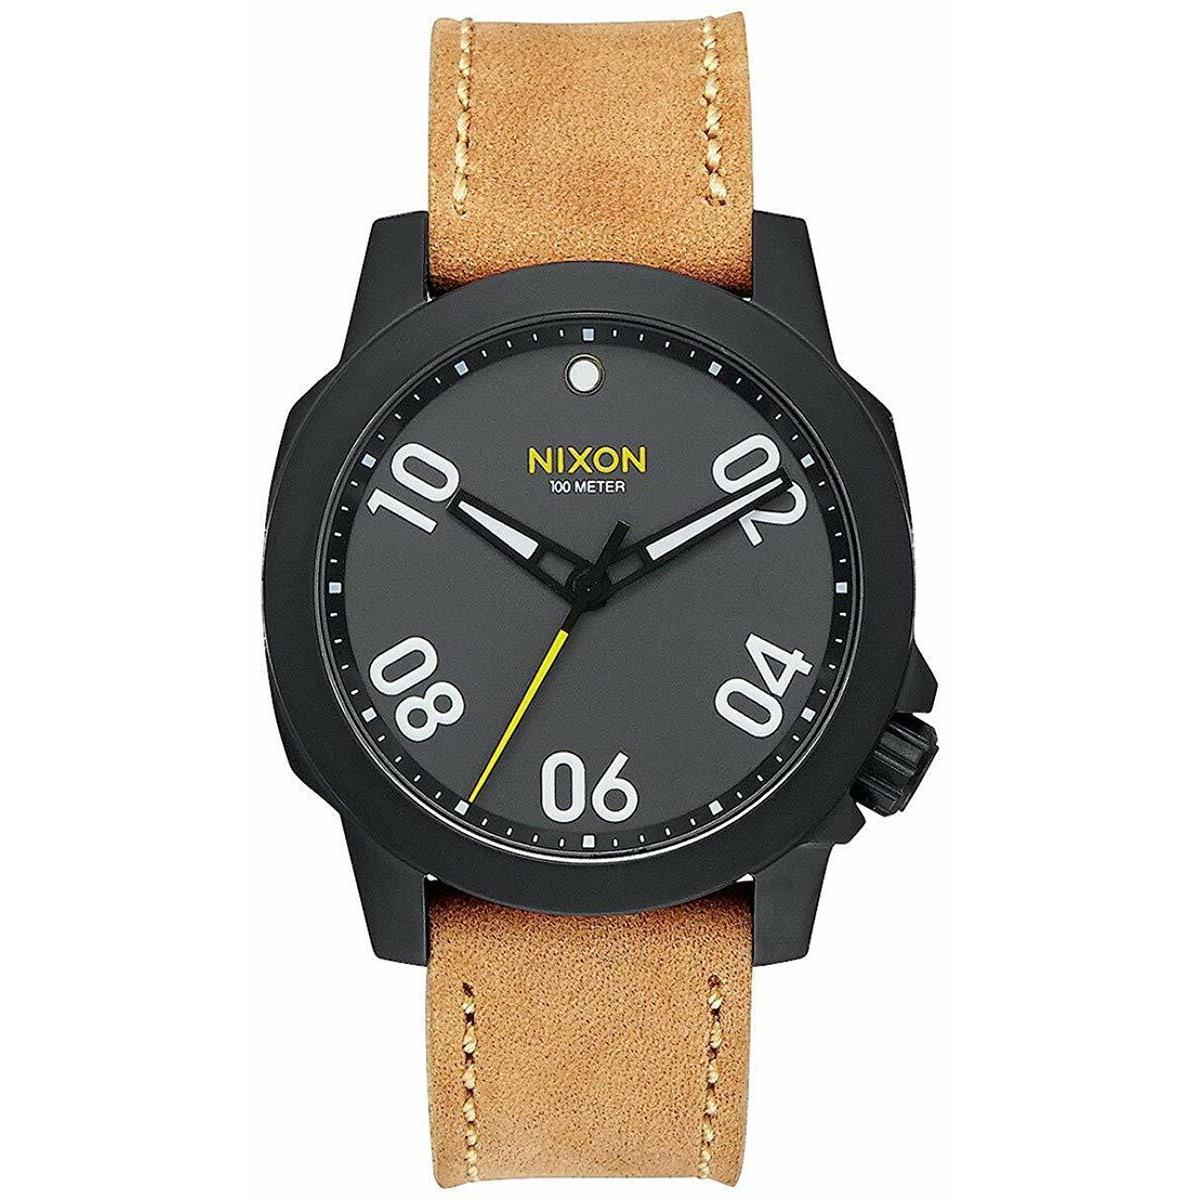 Nixon Ranger 40 Leather Black Gunmetal Watch A471 2093 / A471-2093 / A4712093 - Black Dial, Tan Band